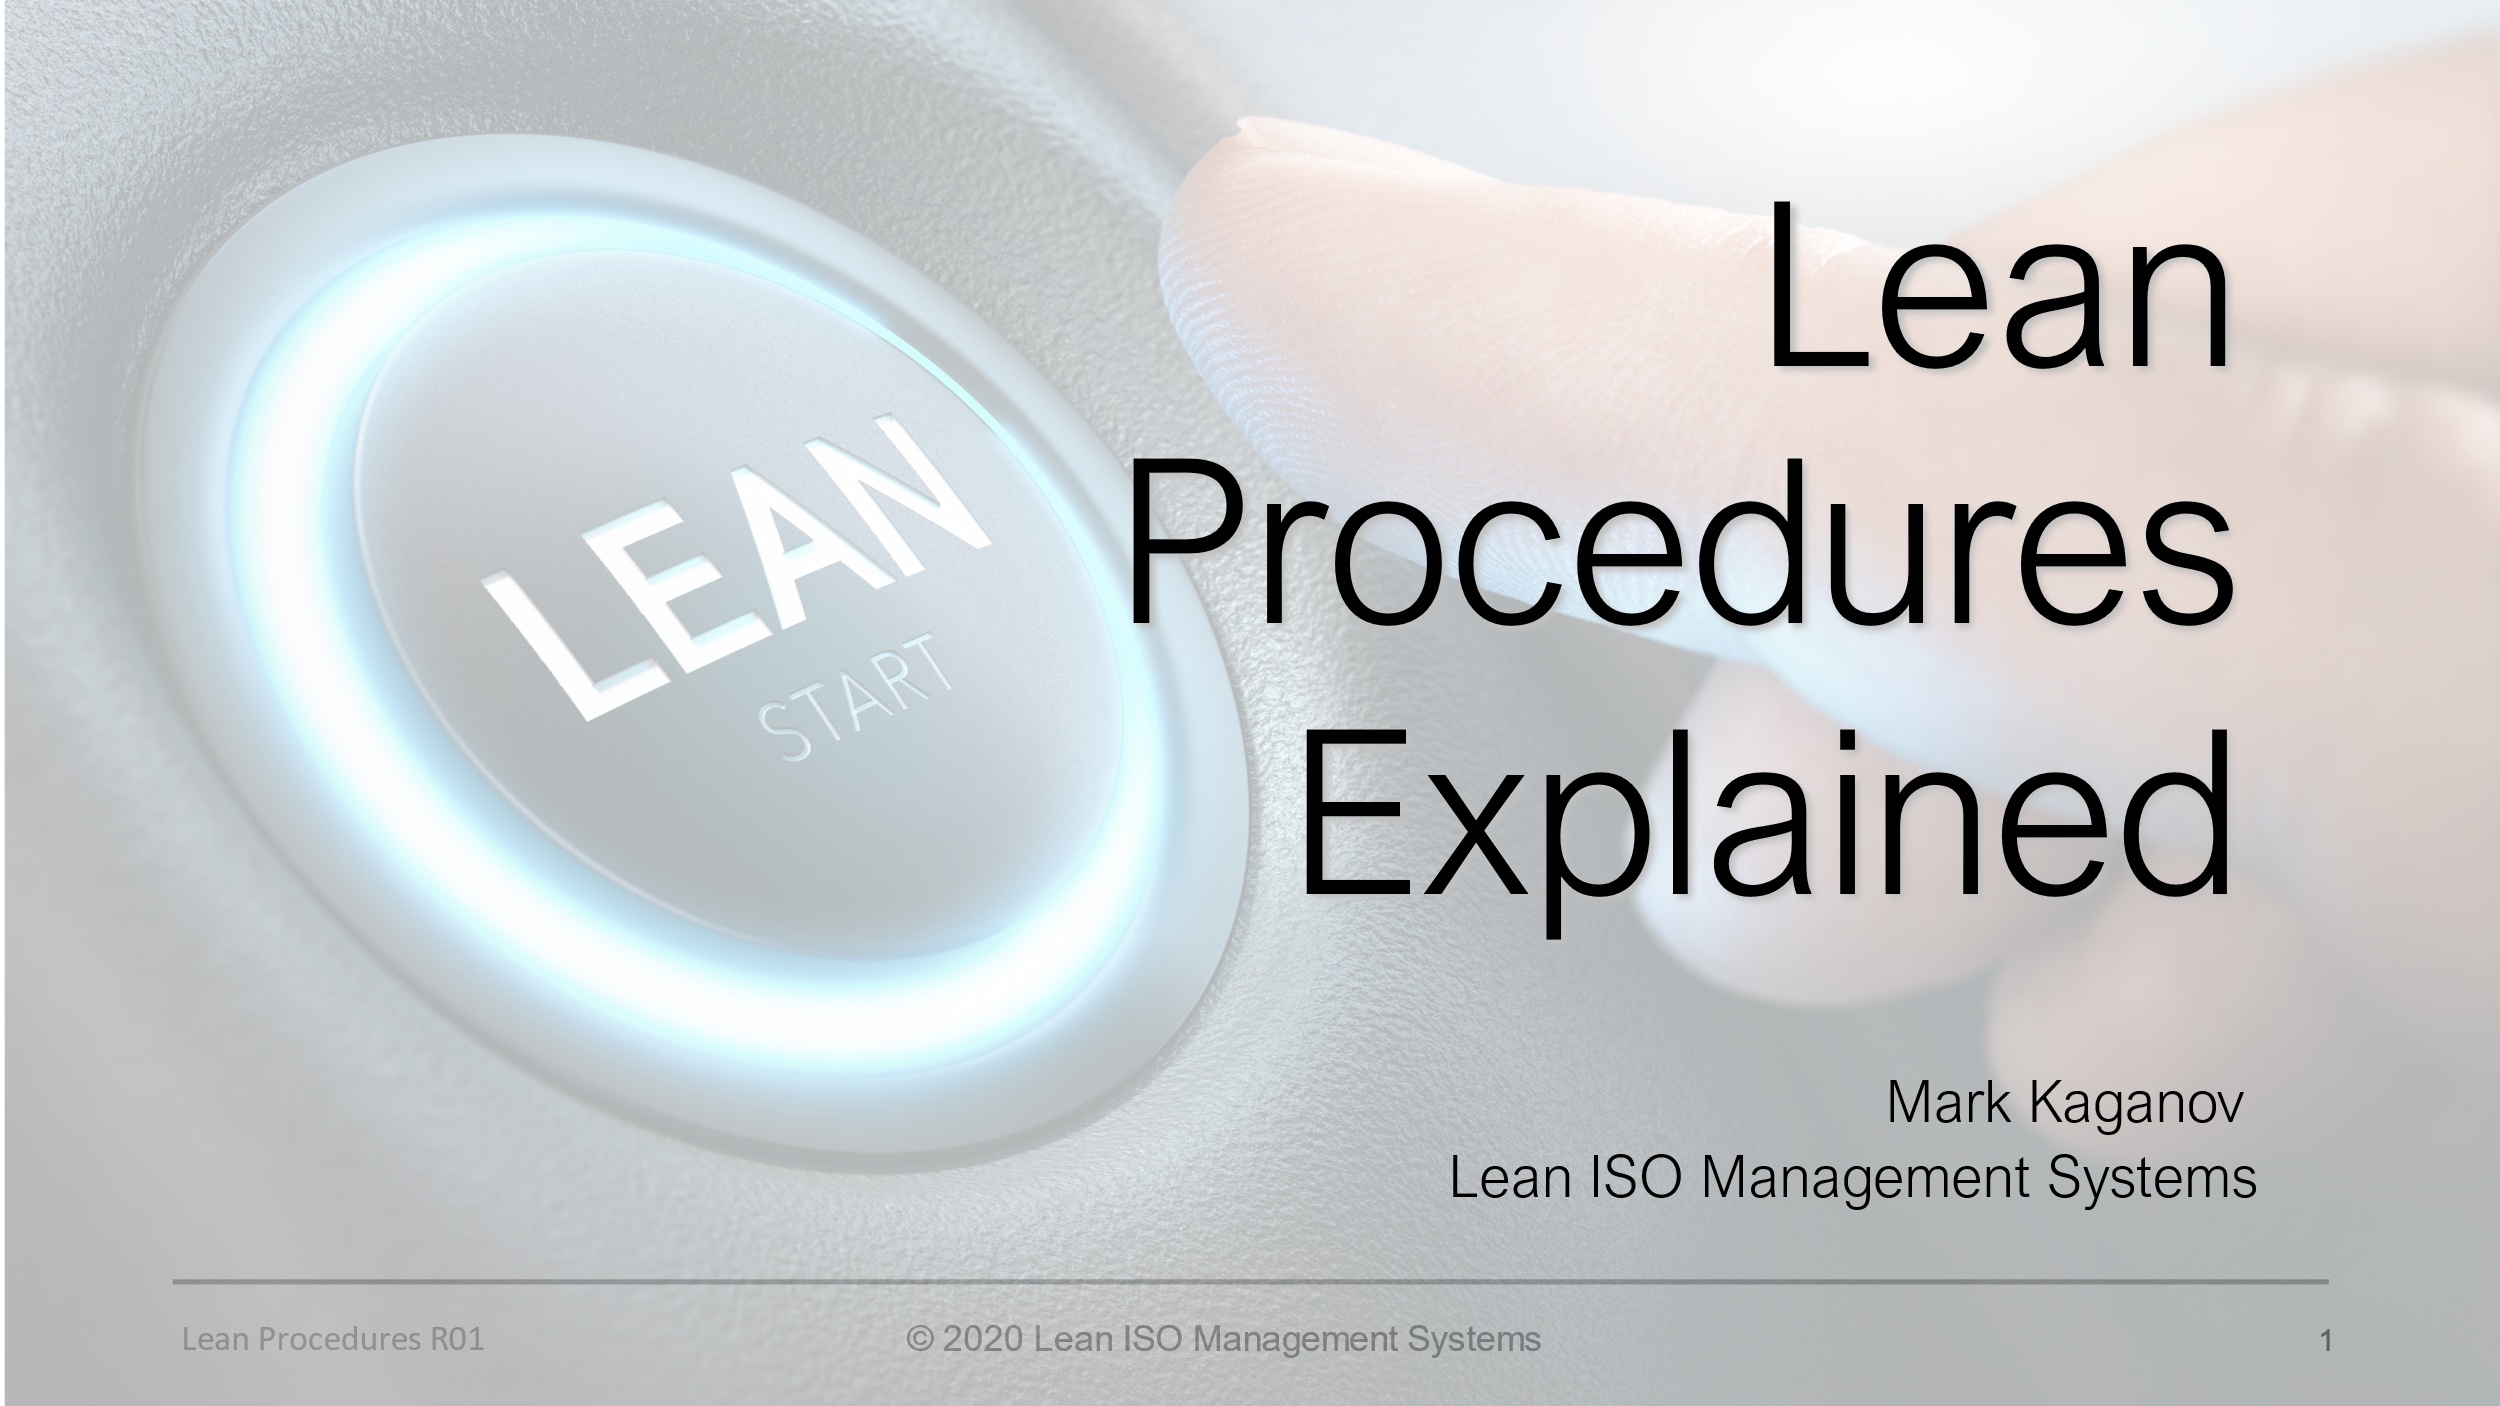 Lean Procedures Explained